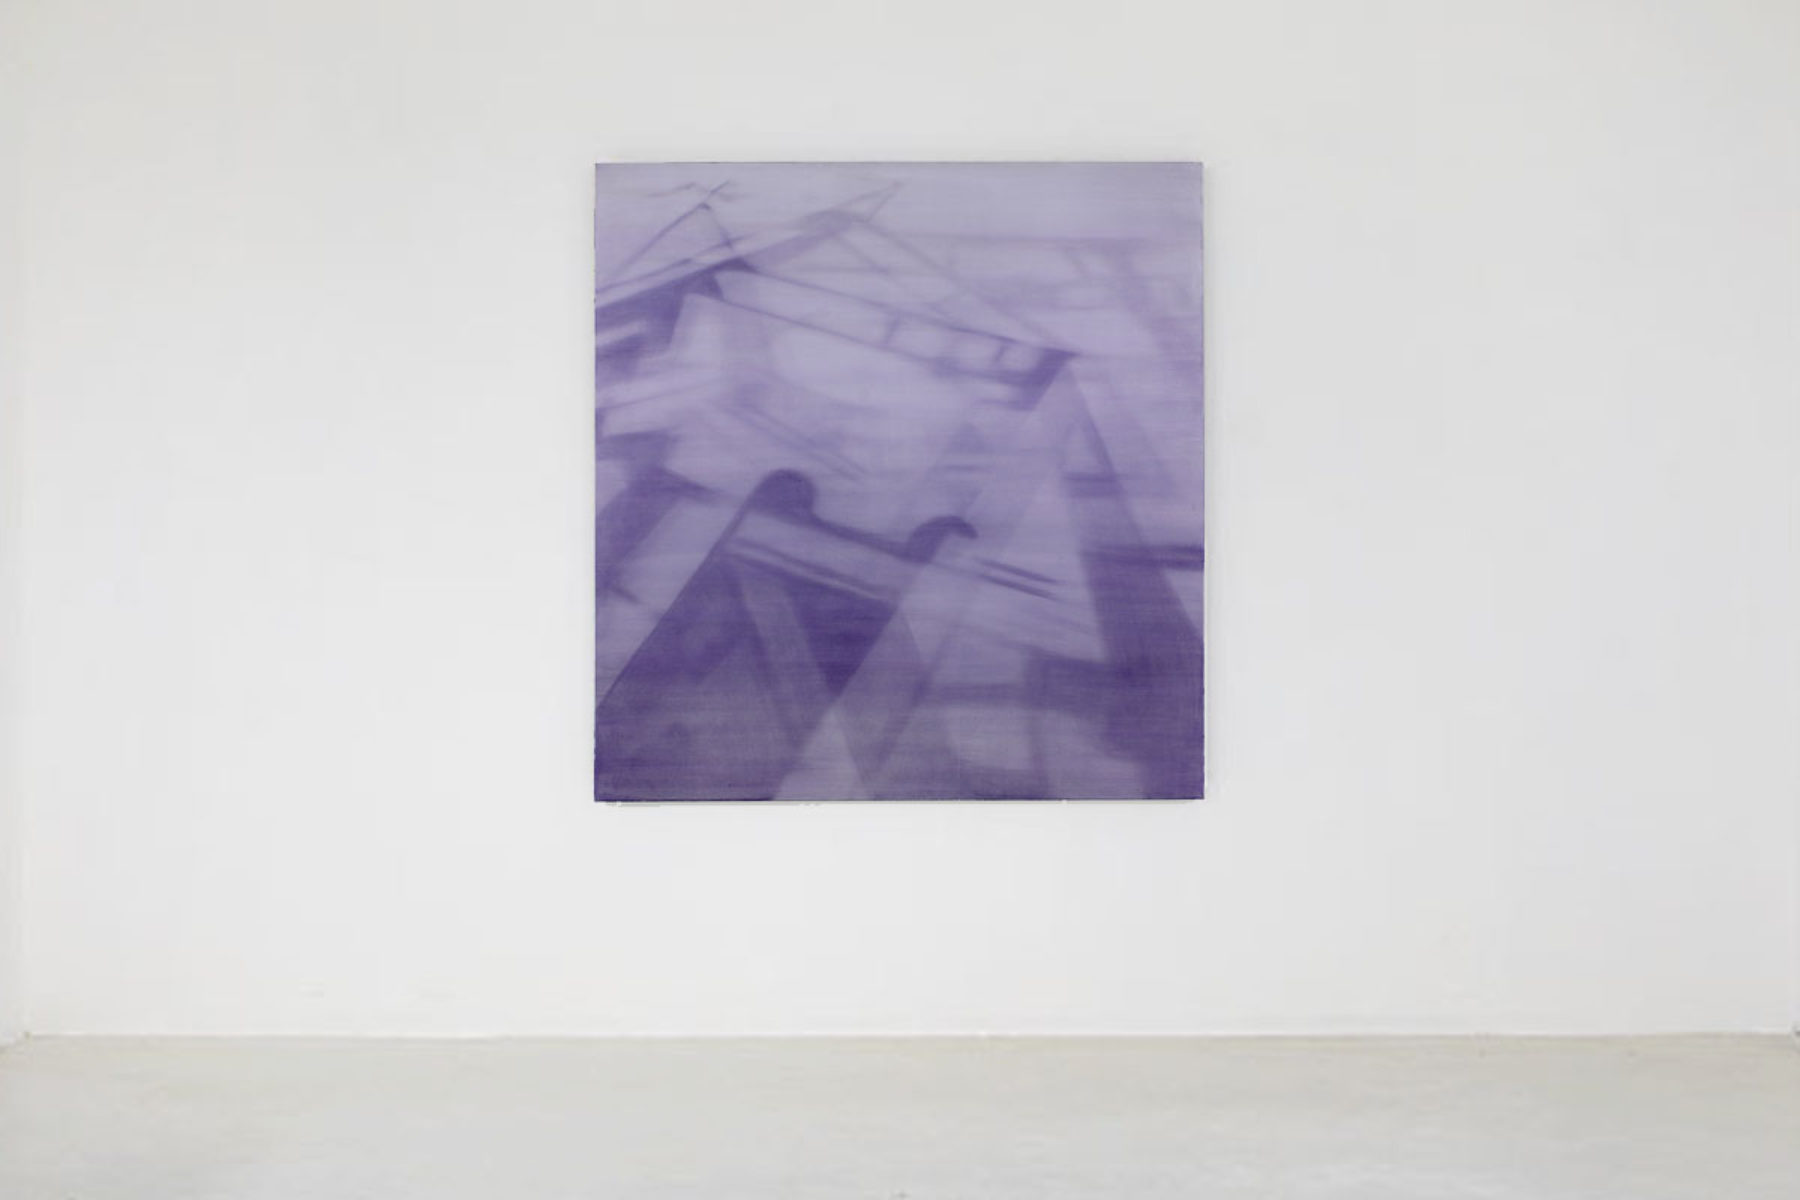 Antonio Marchetti Lamera, Raggi ombrosi, 2017, mixed media on canvas, 150 x 150 x 5 cm, ph. M.A. Sereni